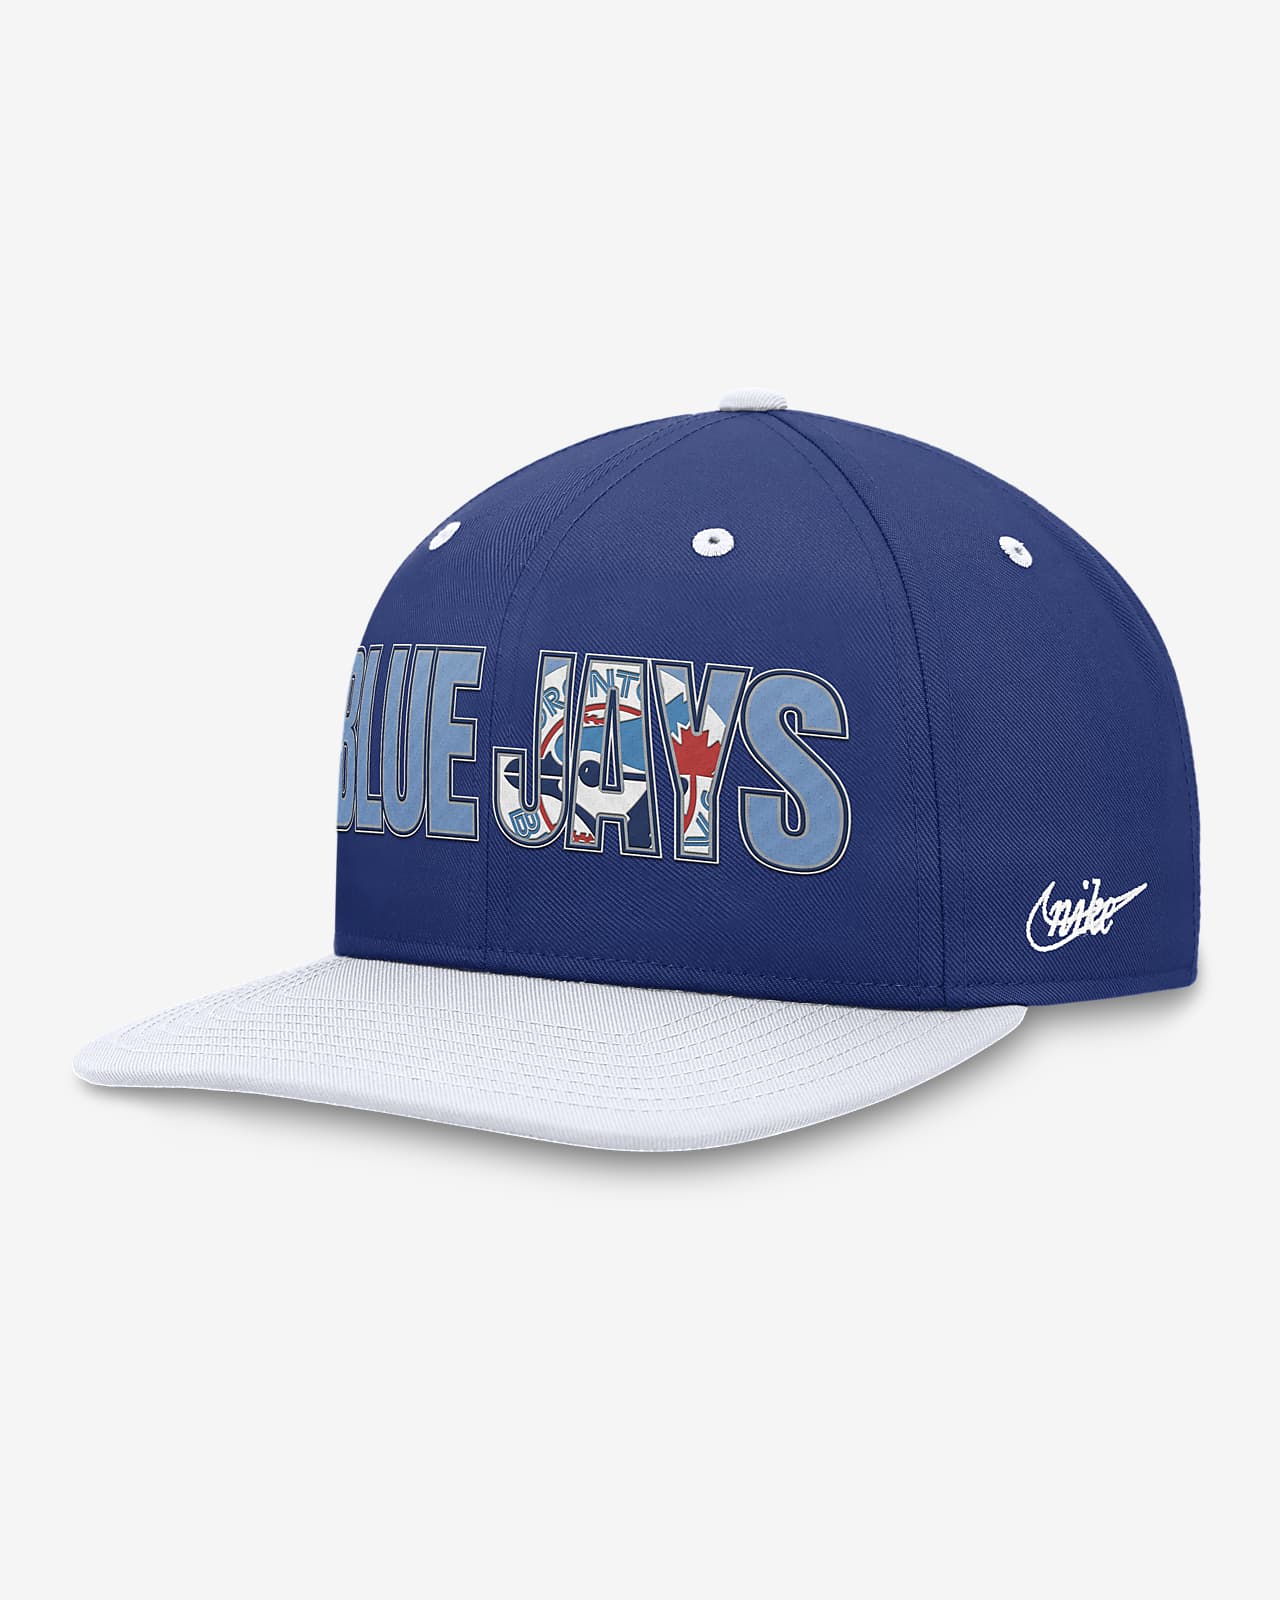 blue jay hats